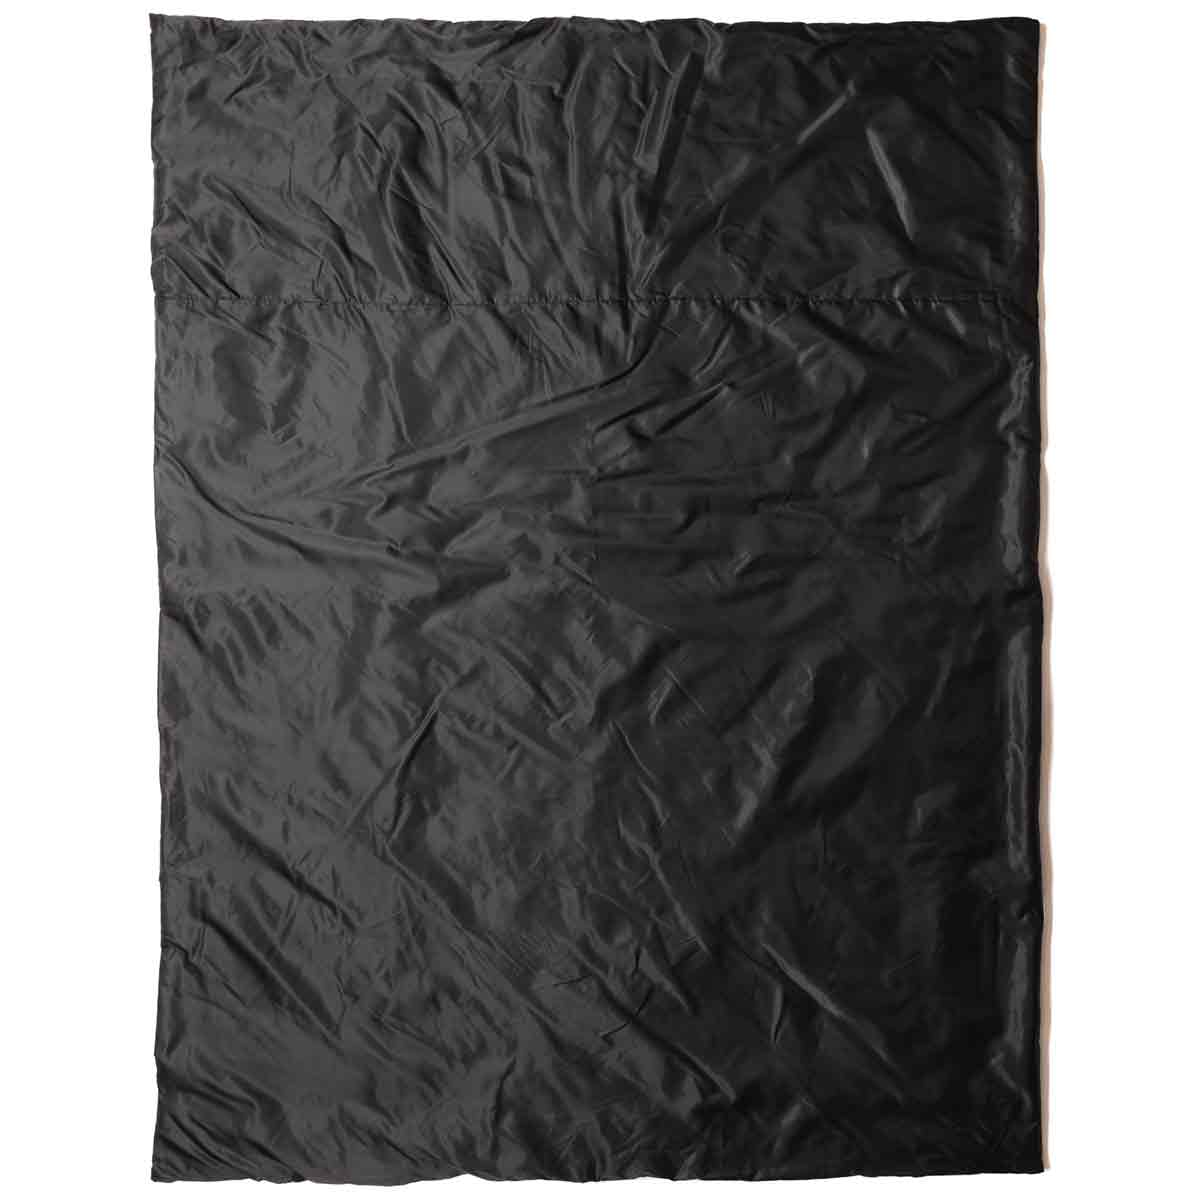 Snugpak Insulated Jungle Blanket - John Bull Clothing